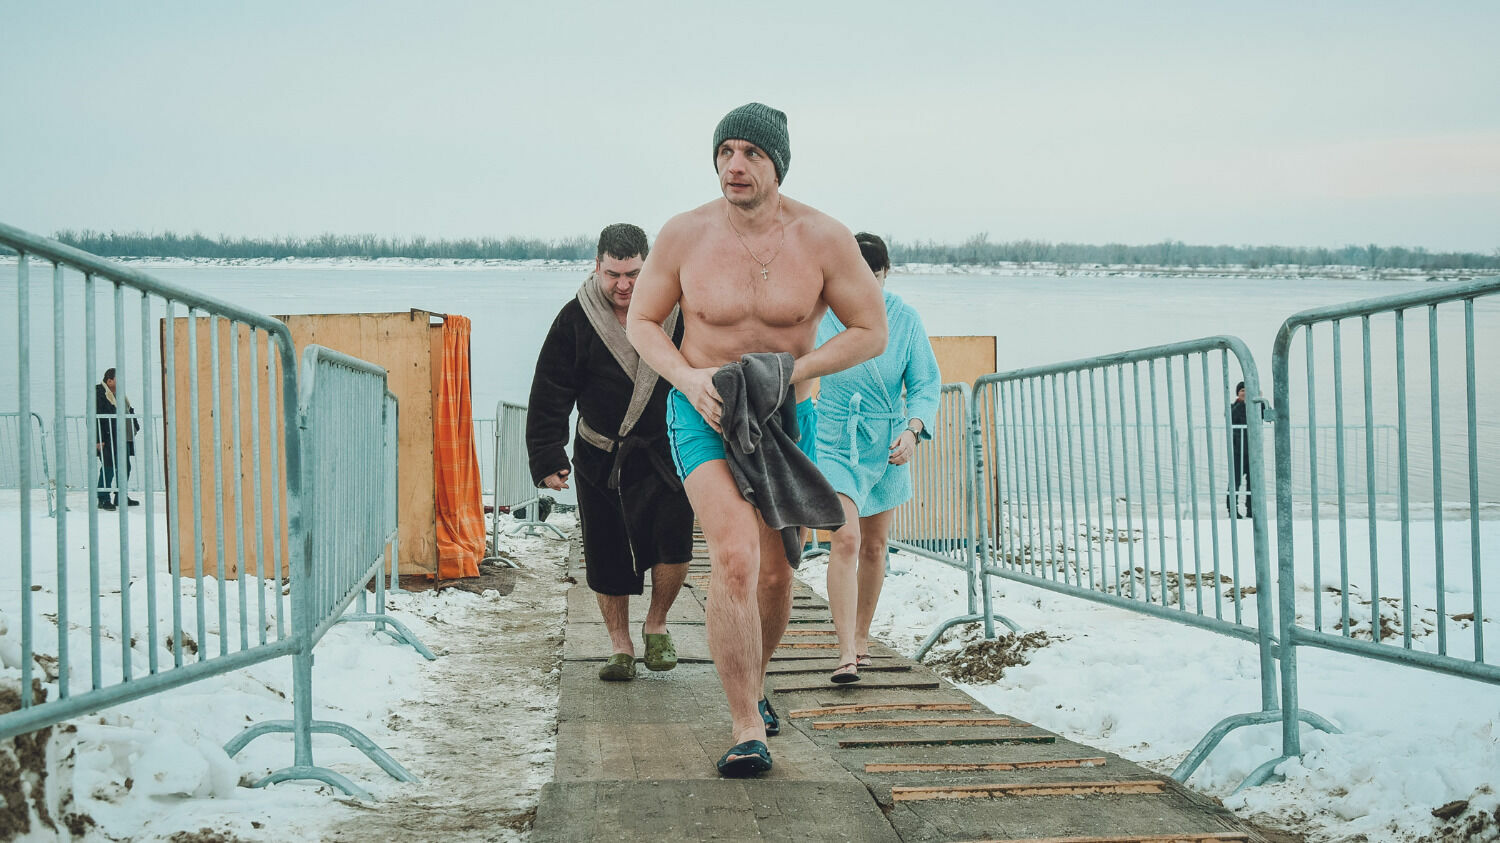 Проруби на Крещение во Владивостоке: правила купания и меры безопасности